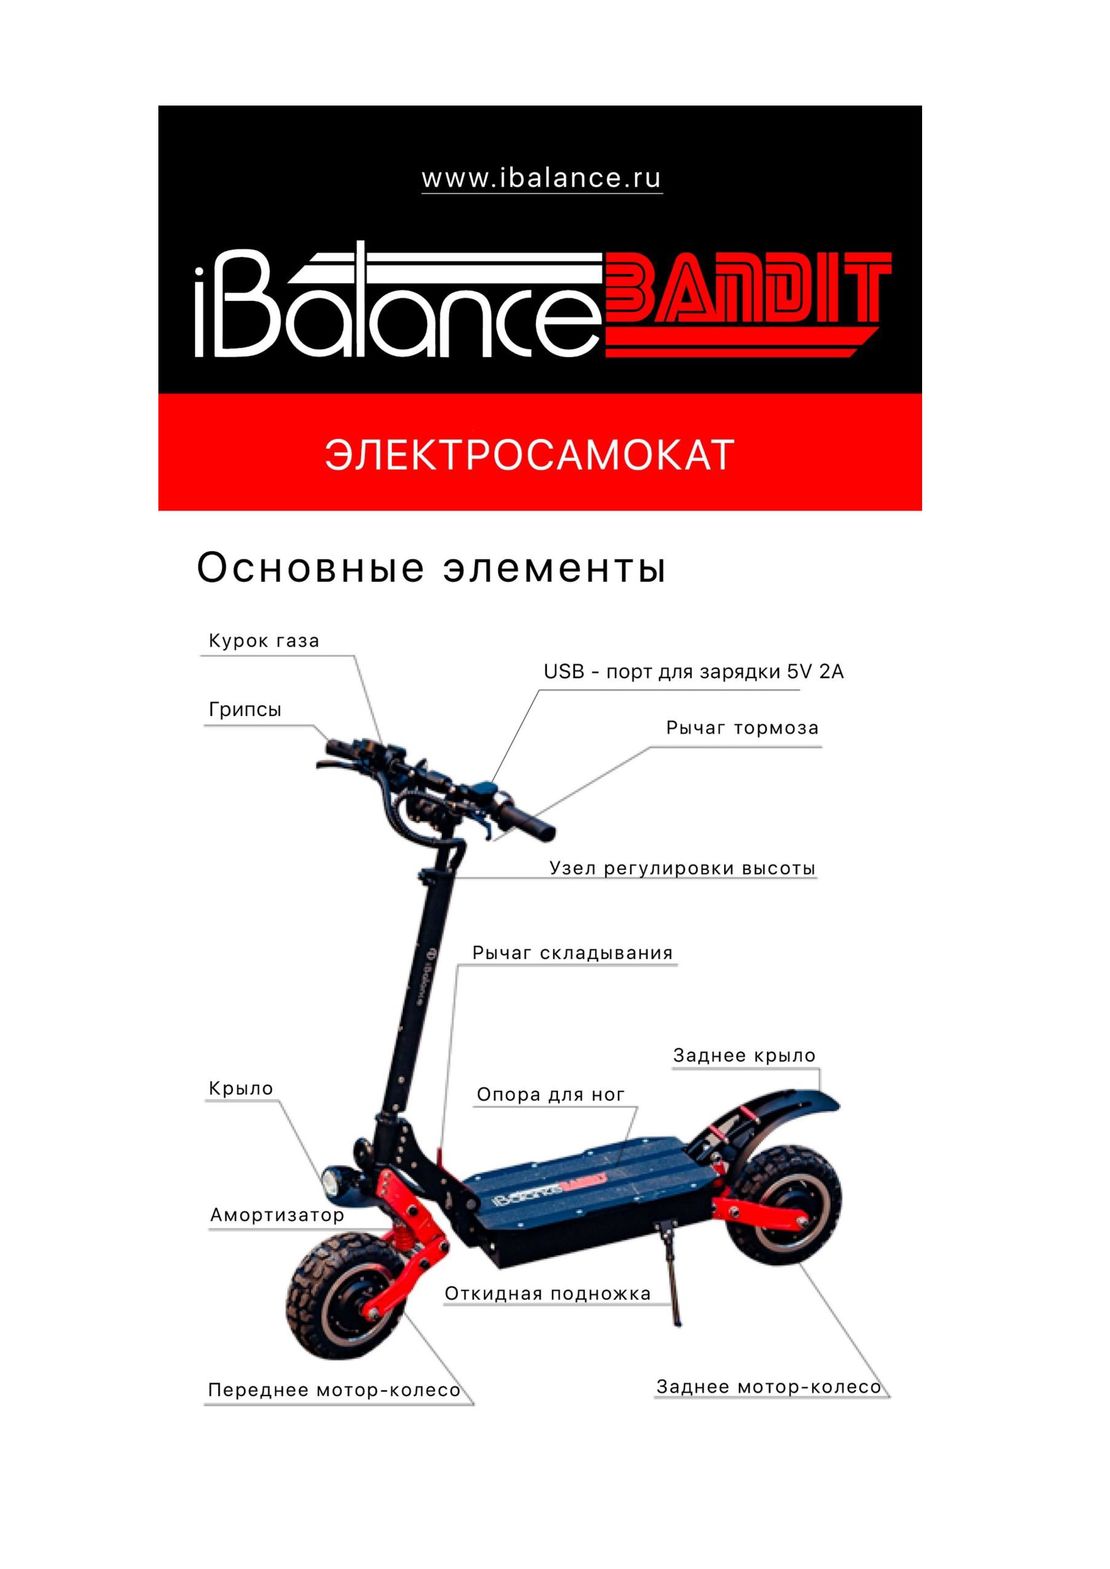 iBalance Bandit инструкция на русском